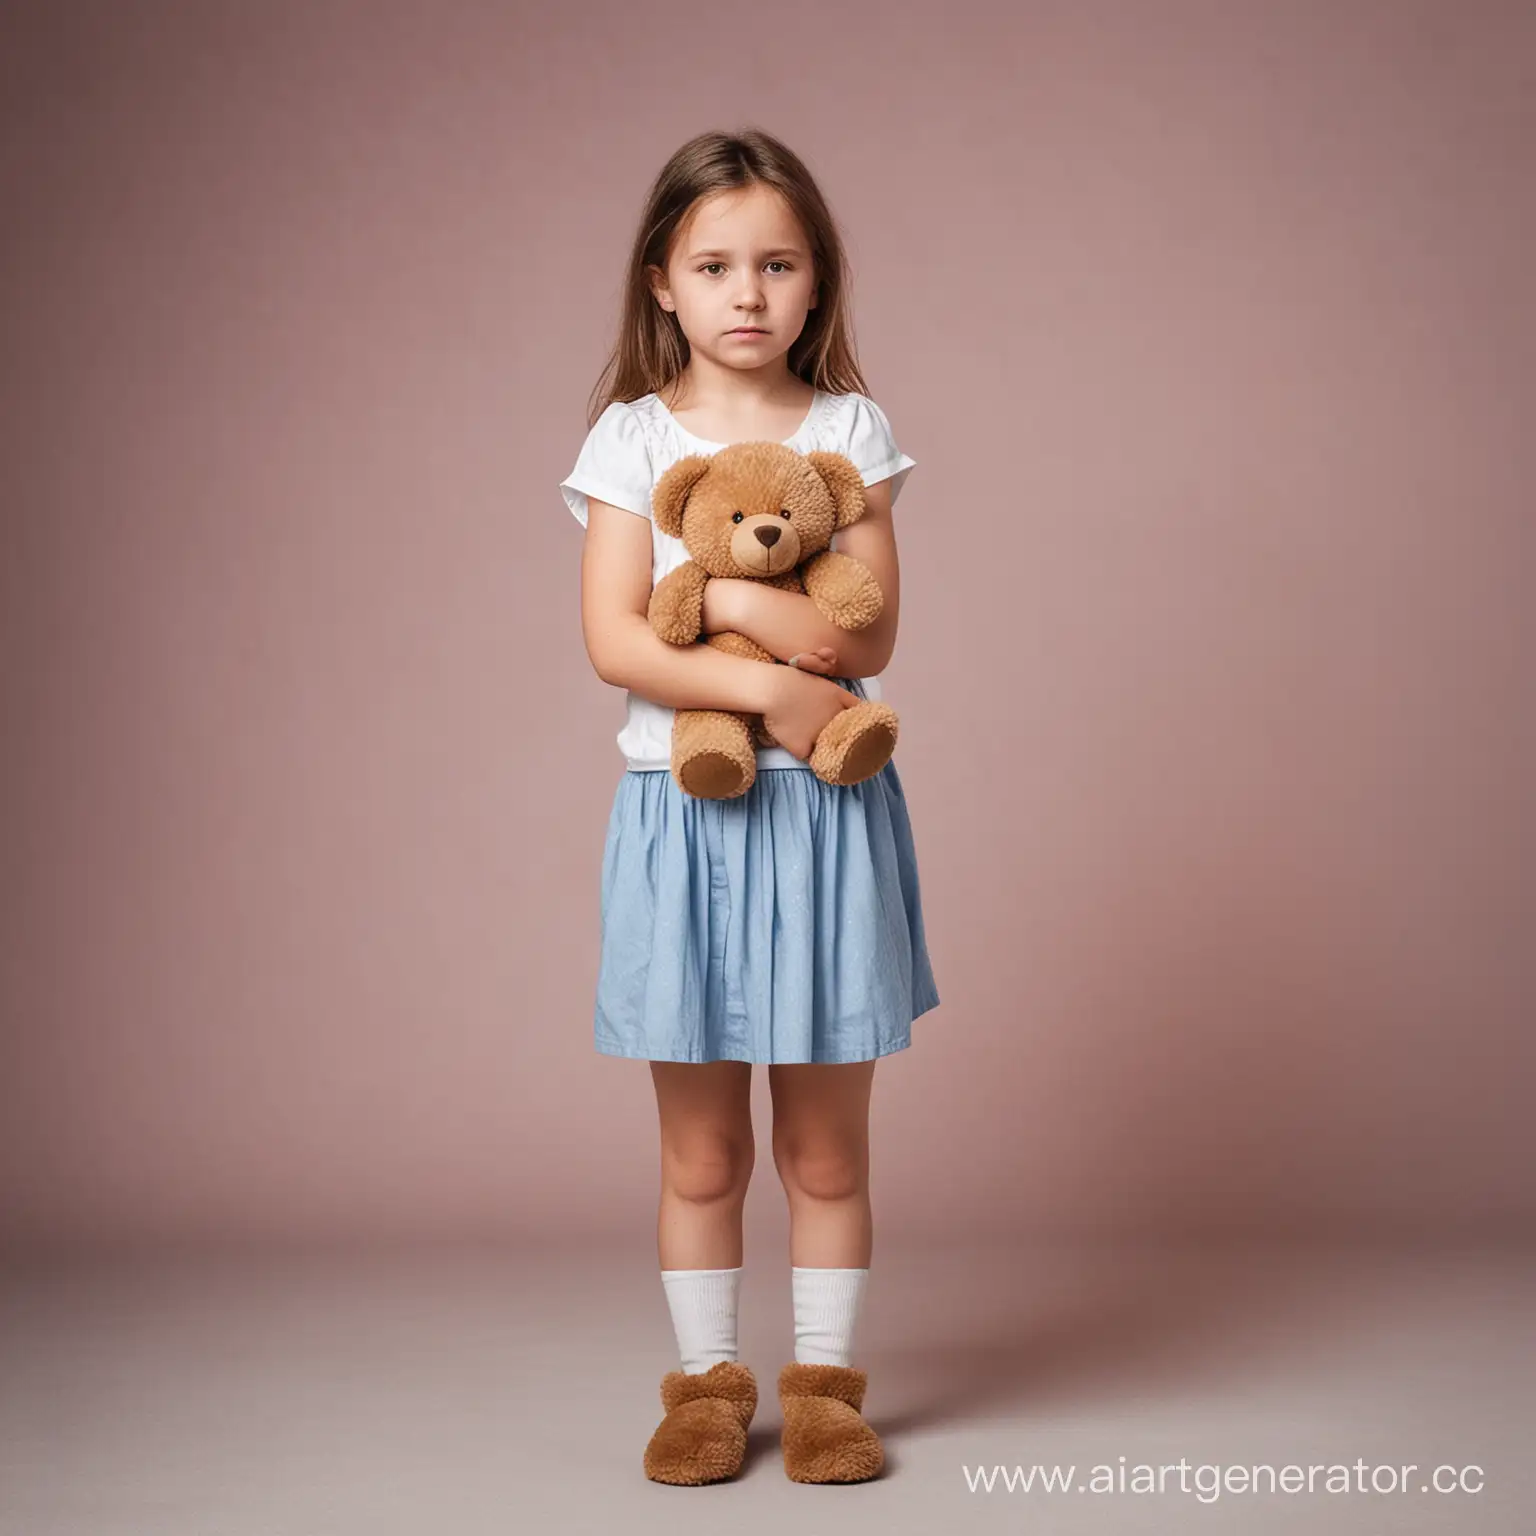 Фотография девочки 10 лет в полный рост. Девочка грустная, стоит с игрушечным медвежонком в руках.